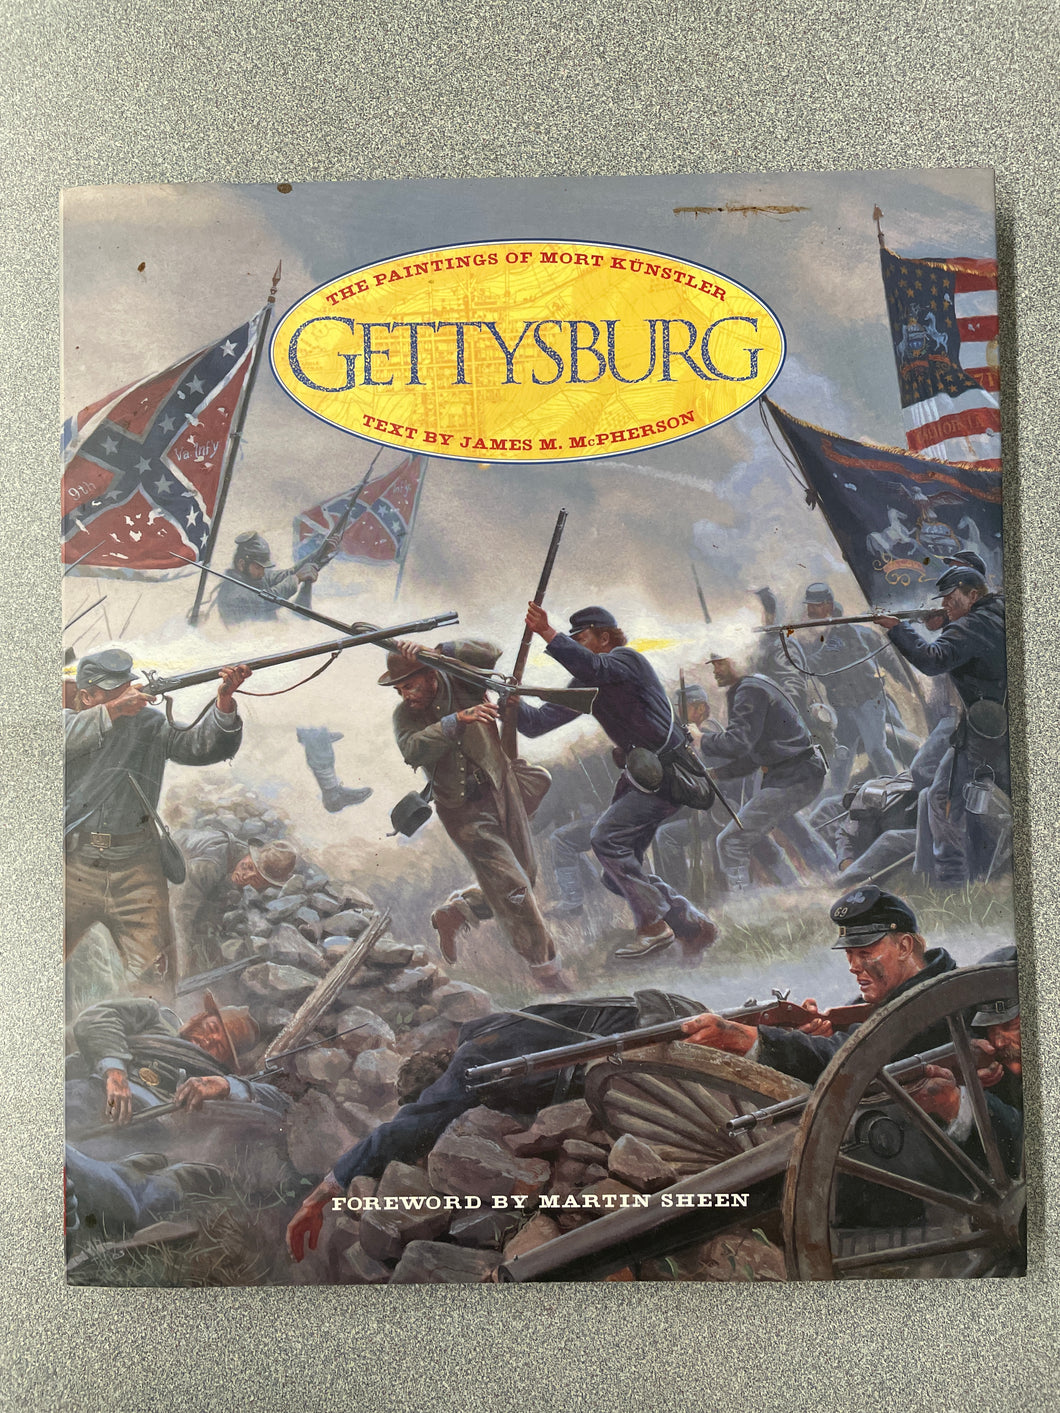 H  Gettysburg: the Painting of Mort Kunstler, McPherson, James M. (1993) N 12/23